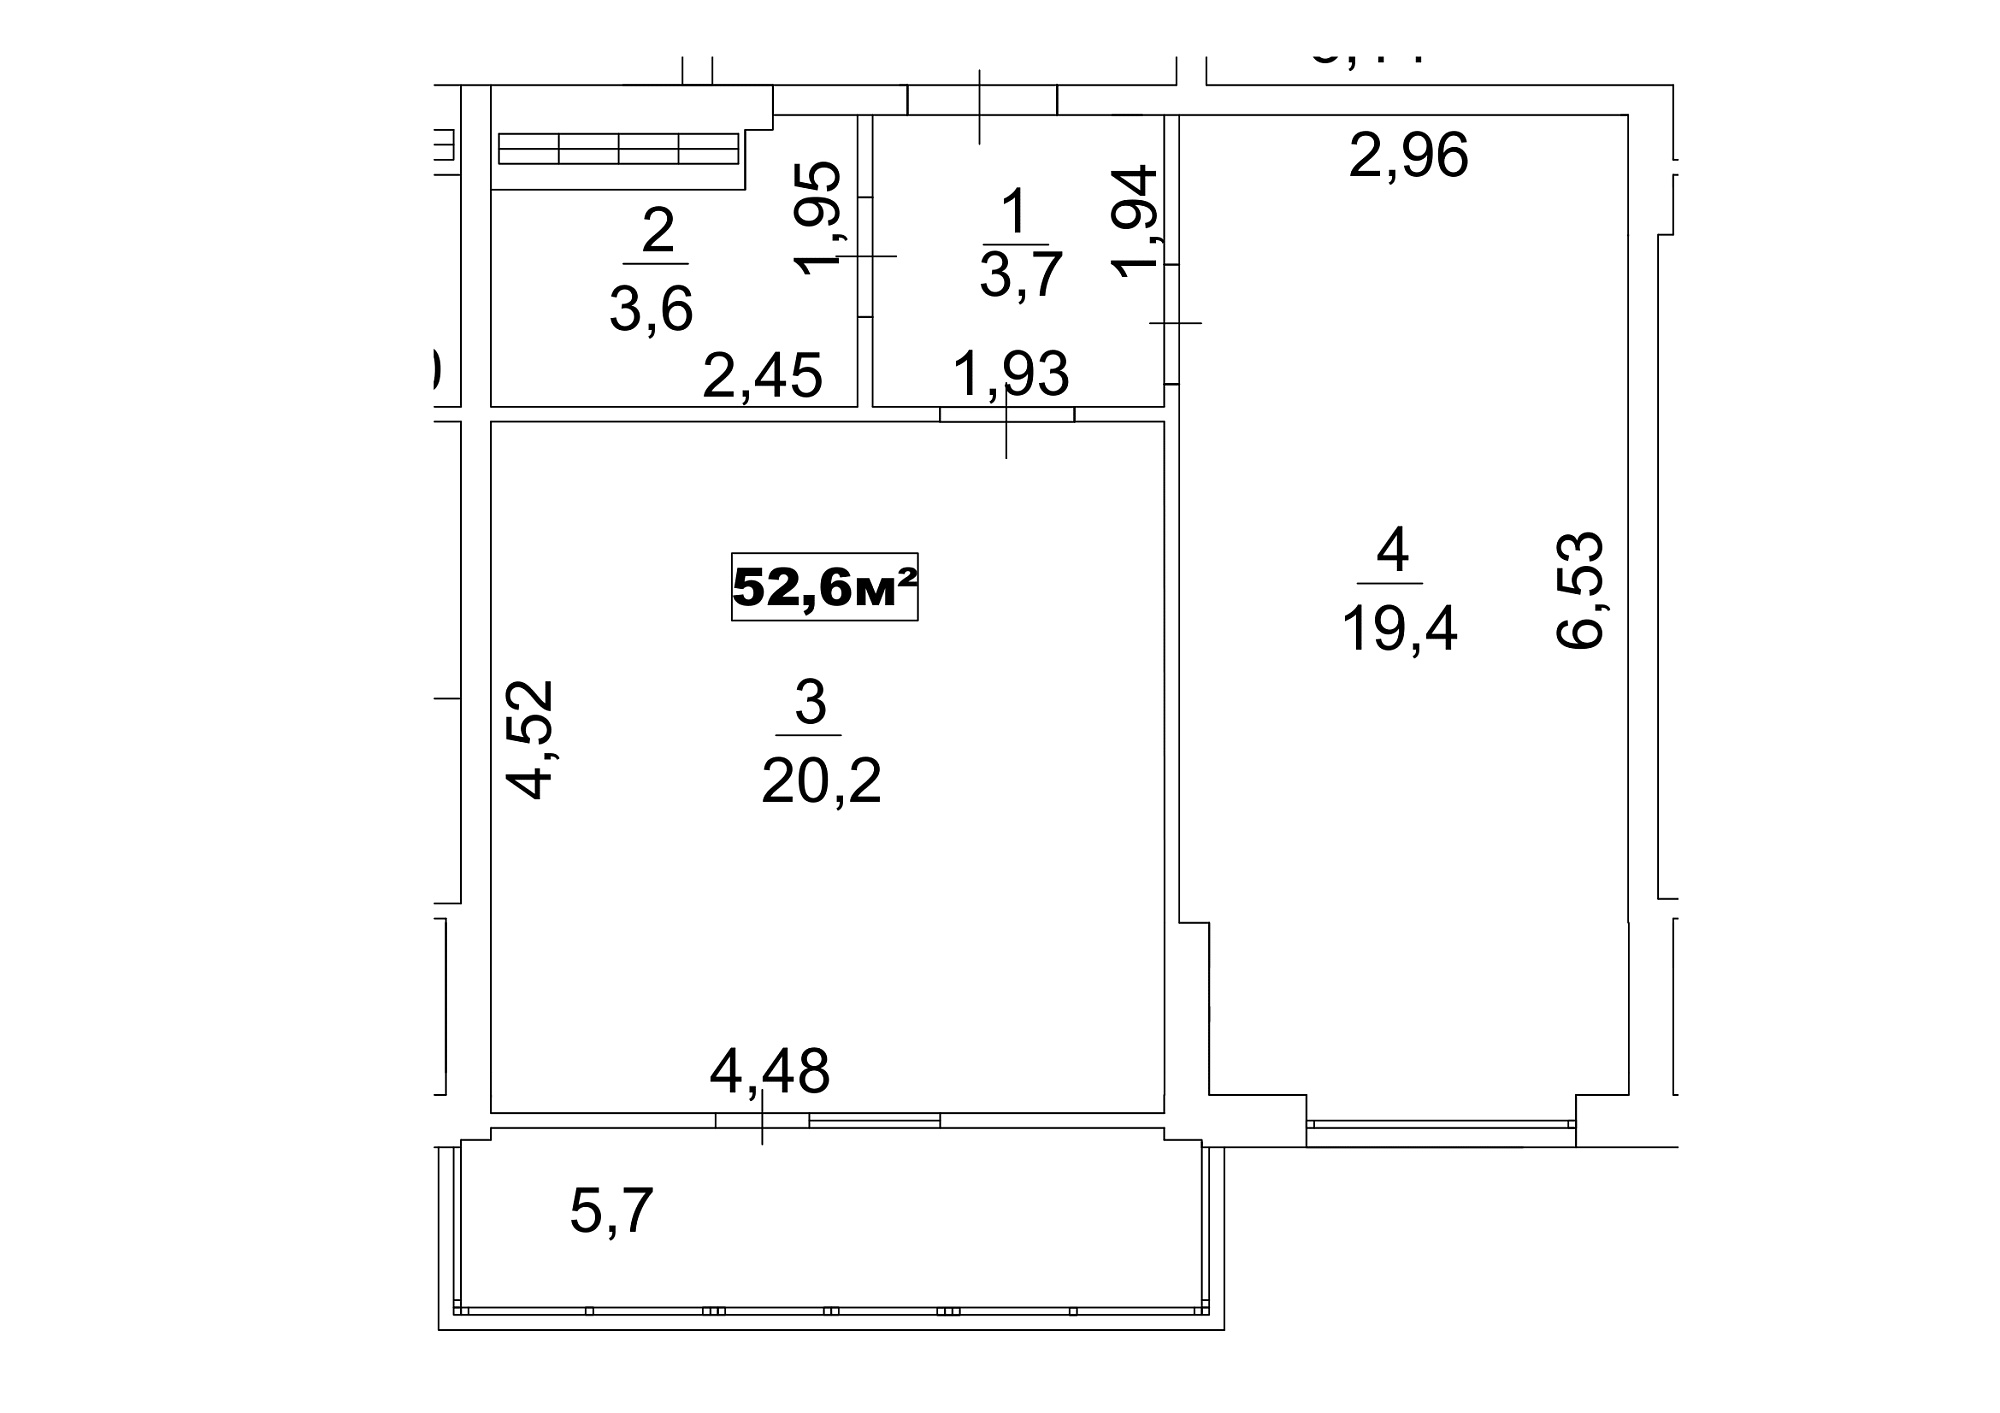 Планировка 1-к квартира площей 52.6м2, AB-13-03/00023.